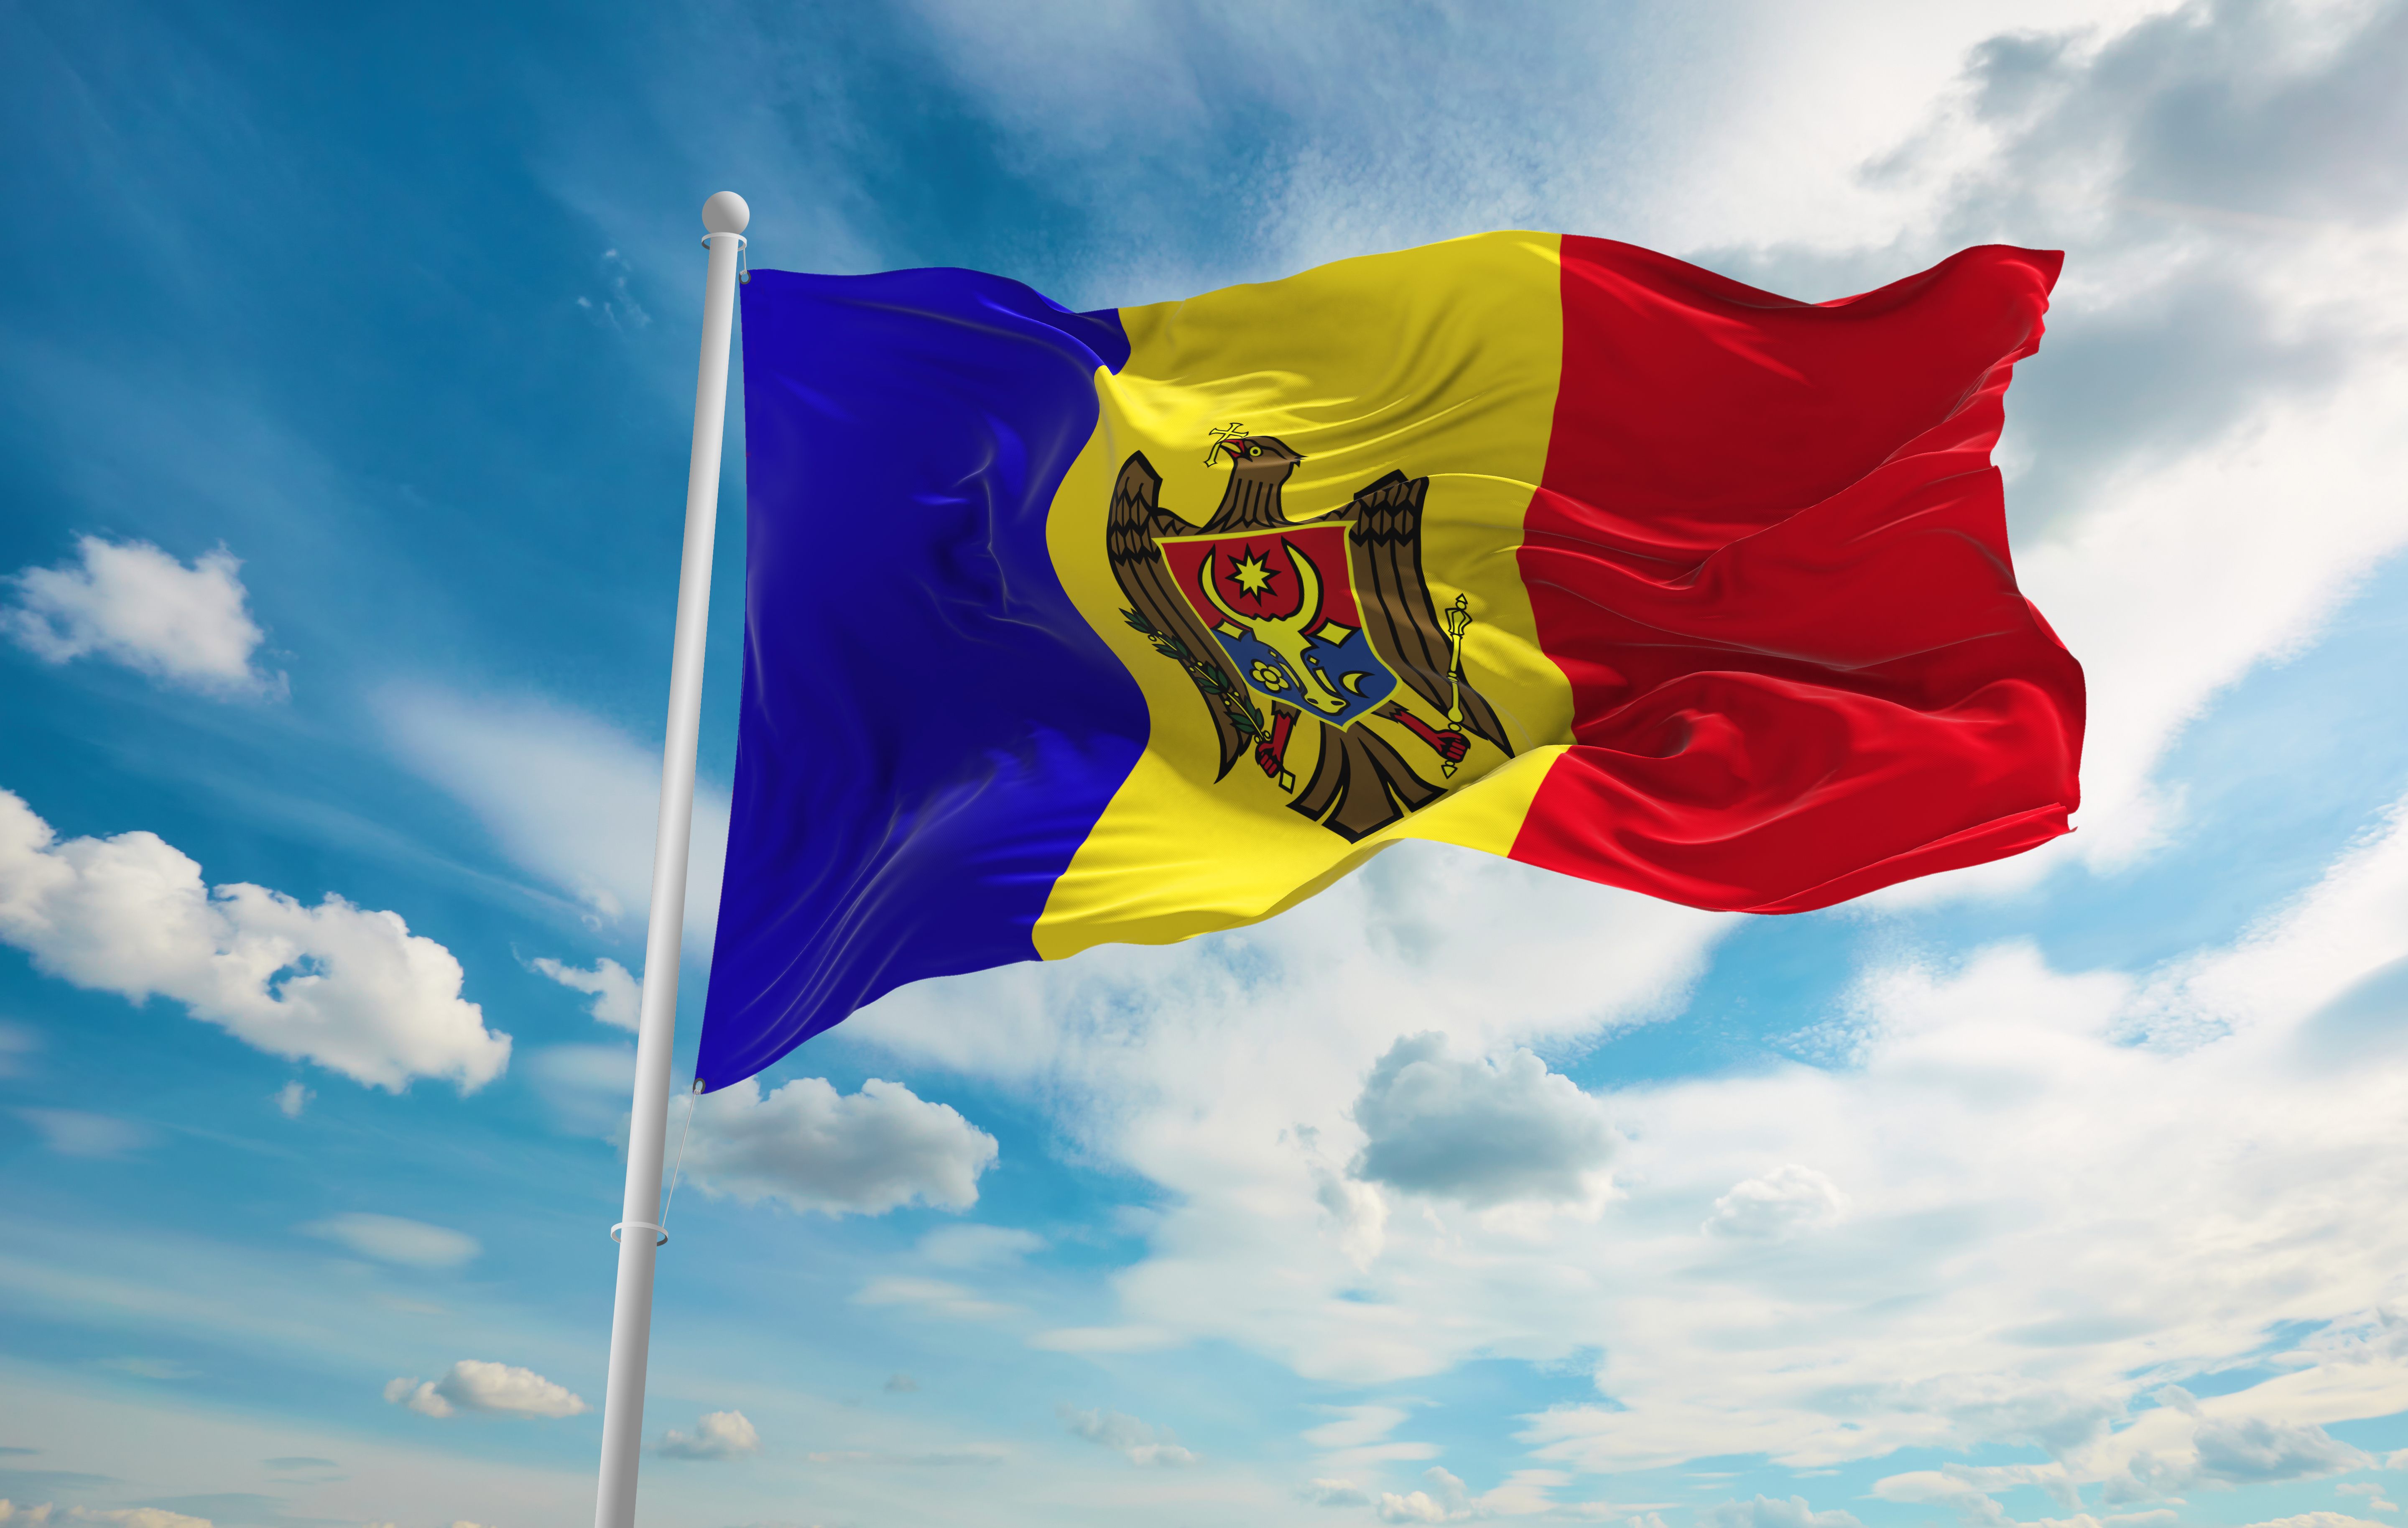 Reacția Republicii Moldova la articolul din The Times: „Nu există indicii care ar arăta că țara este în pericol”